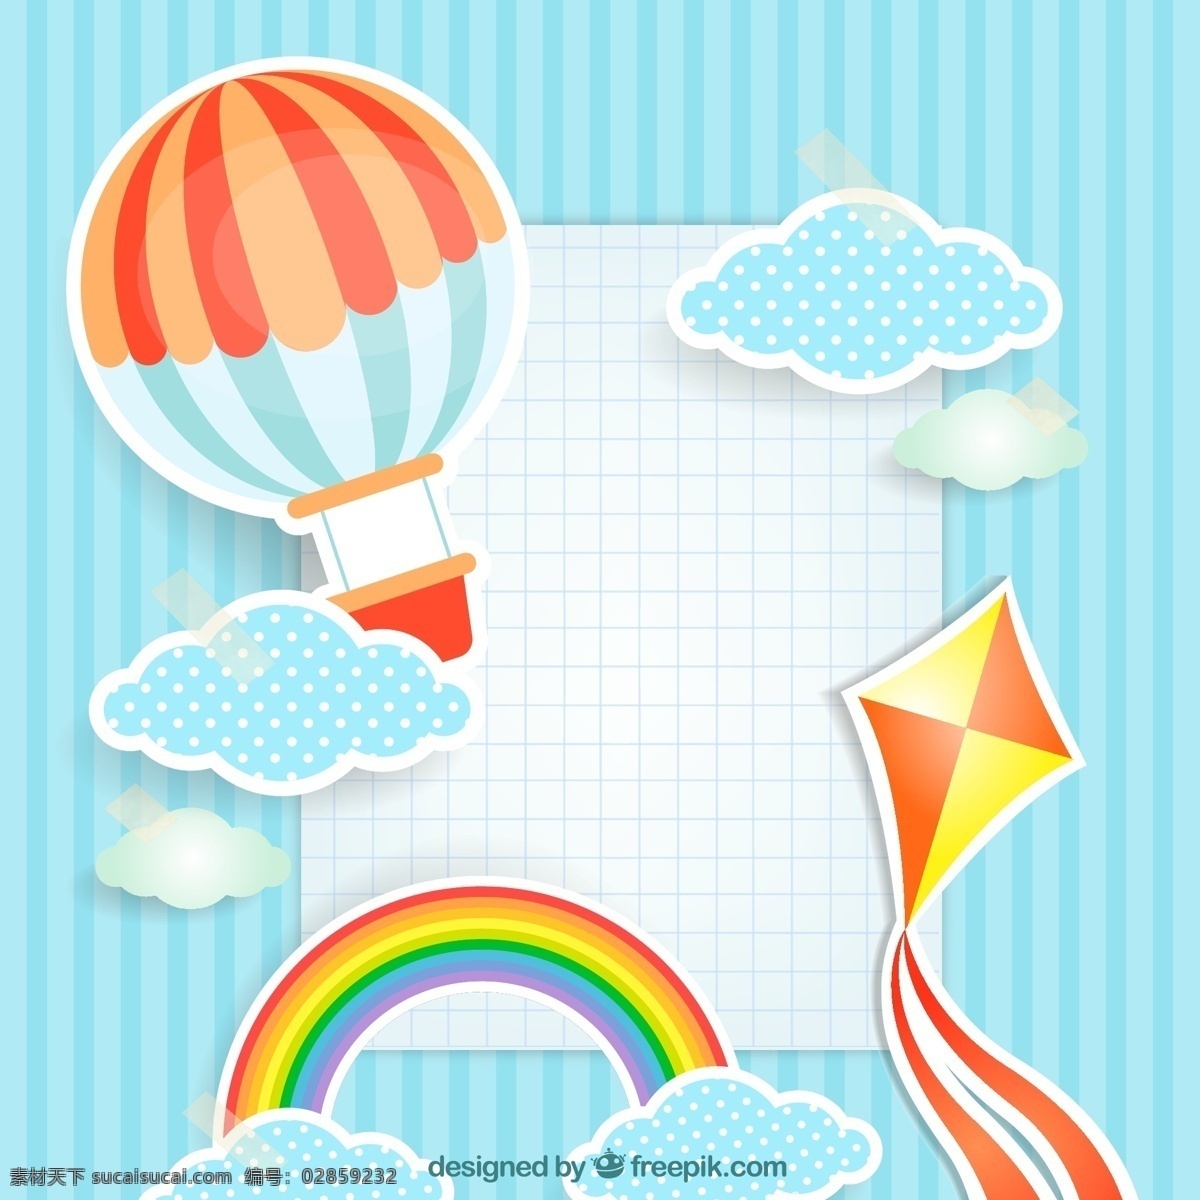 天空 剪贴 画 格子 背景 热气球 云朵背景 剪贴画 彩虹 风筝 方格 卡通素材